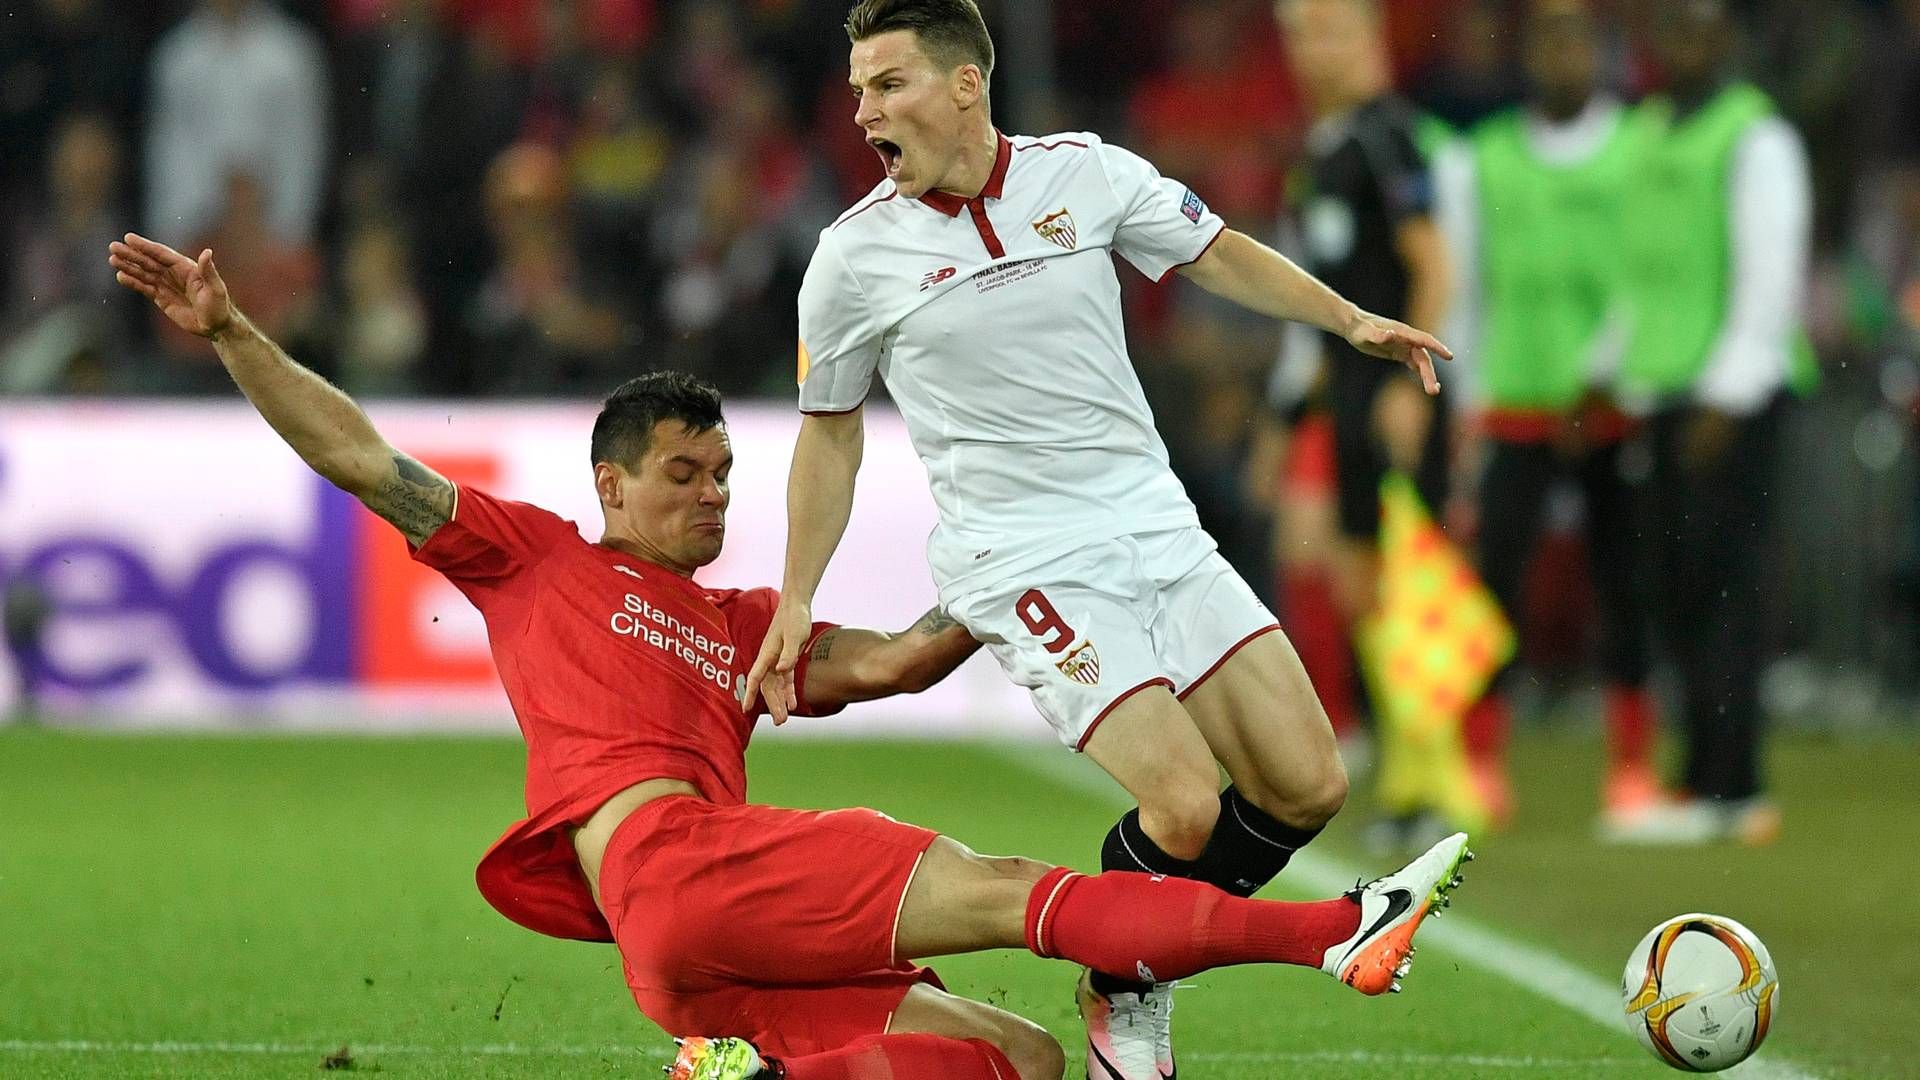 Billede fra onsdagens finale mellem Liverpool i rødt og Sevilla i hvidt. | Foto: Martin Meissner/AP/Polfoto